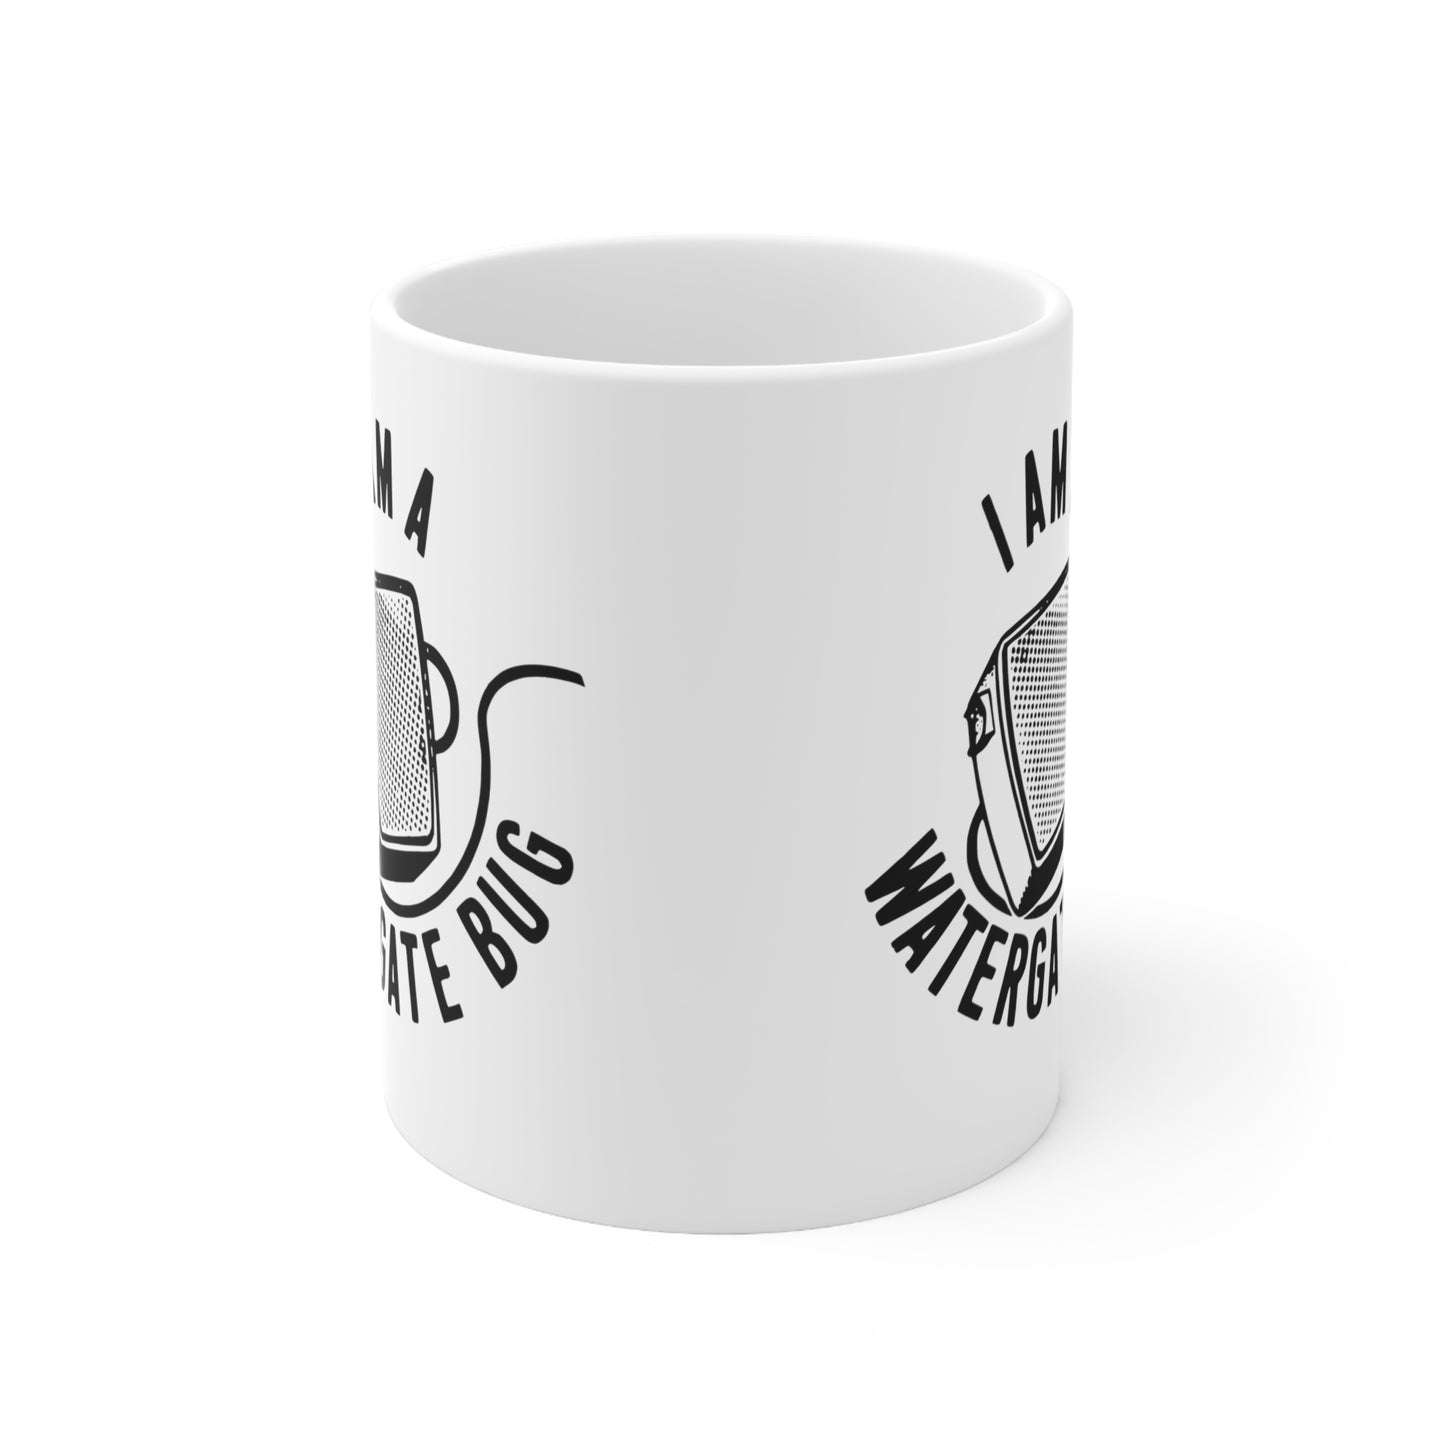 Anti-Nixon I Am A Watergate Bug Political Campaign Button Ceramic Coffee Mug